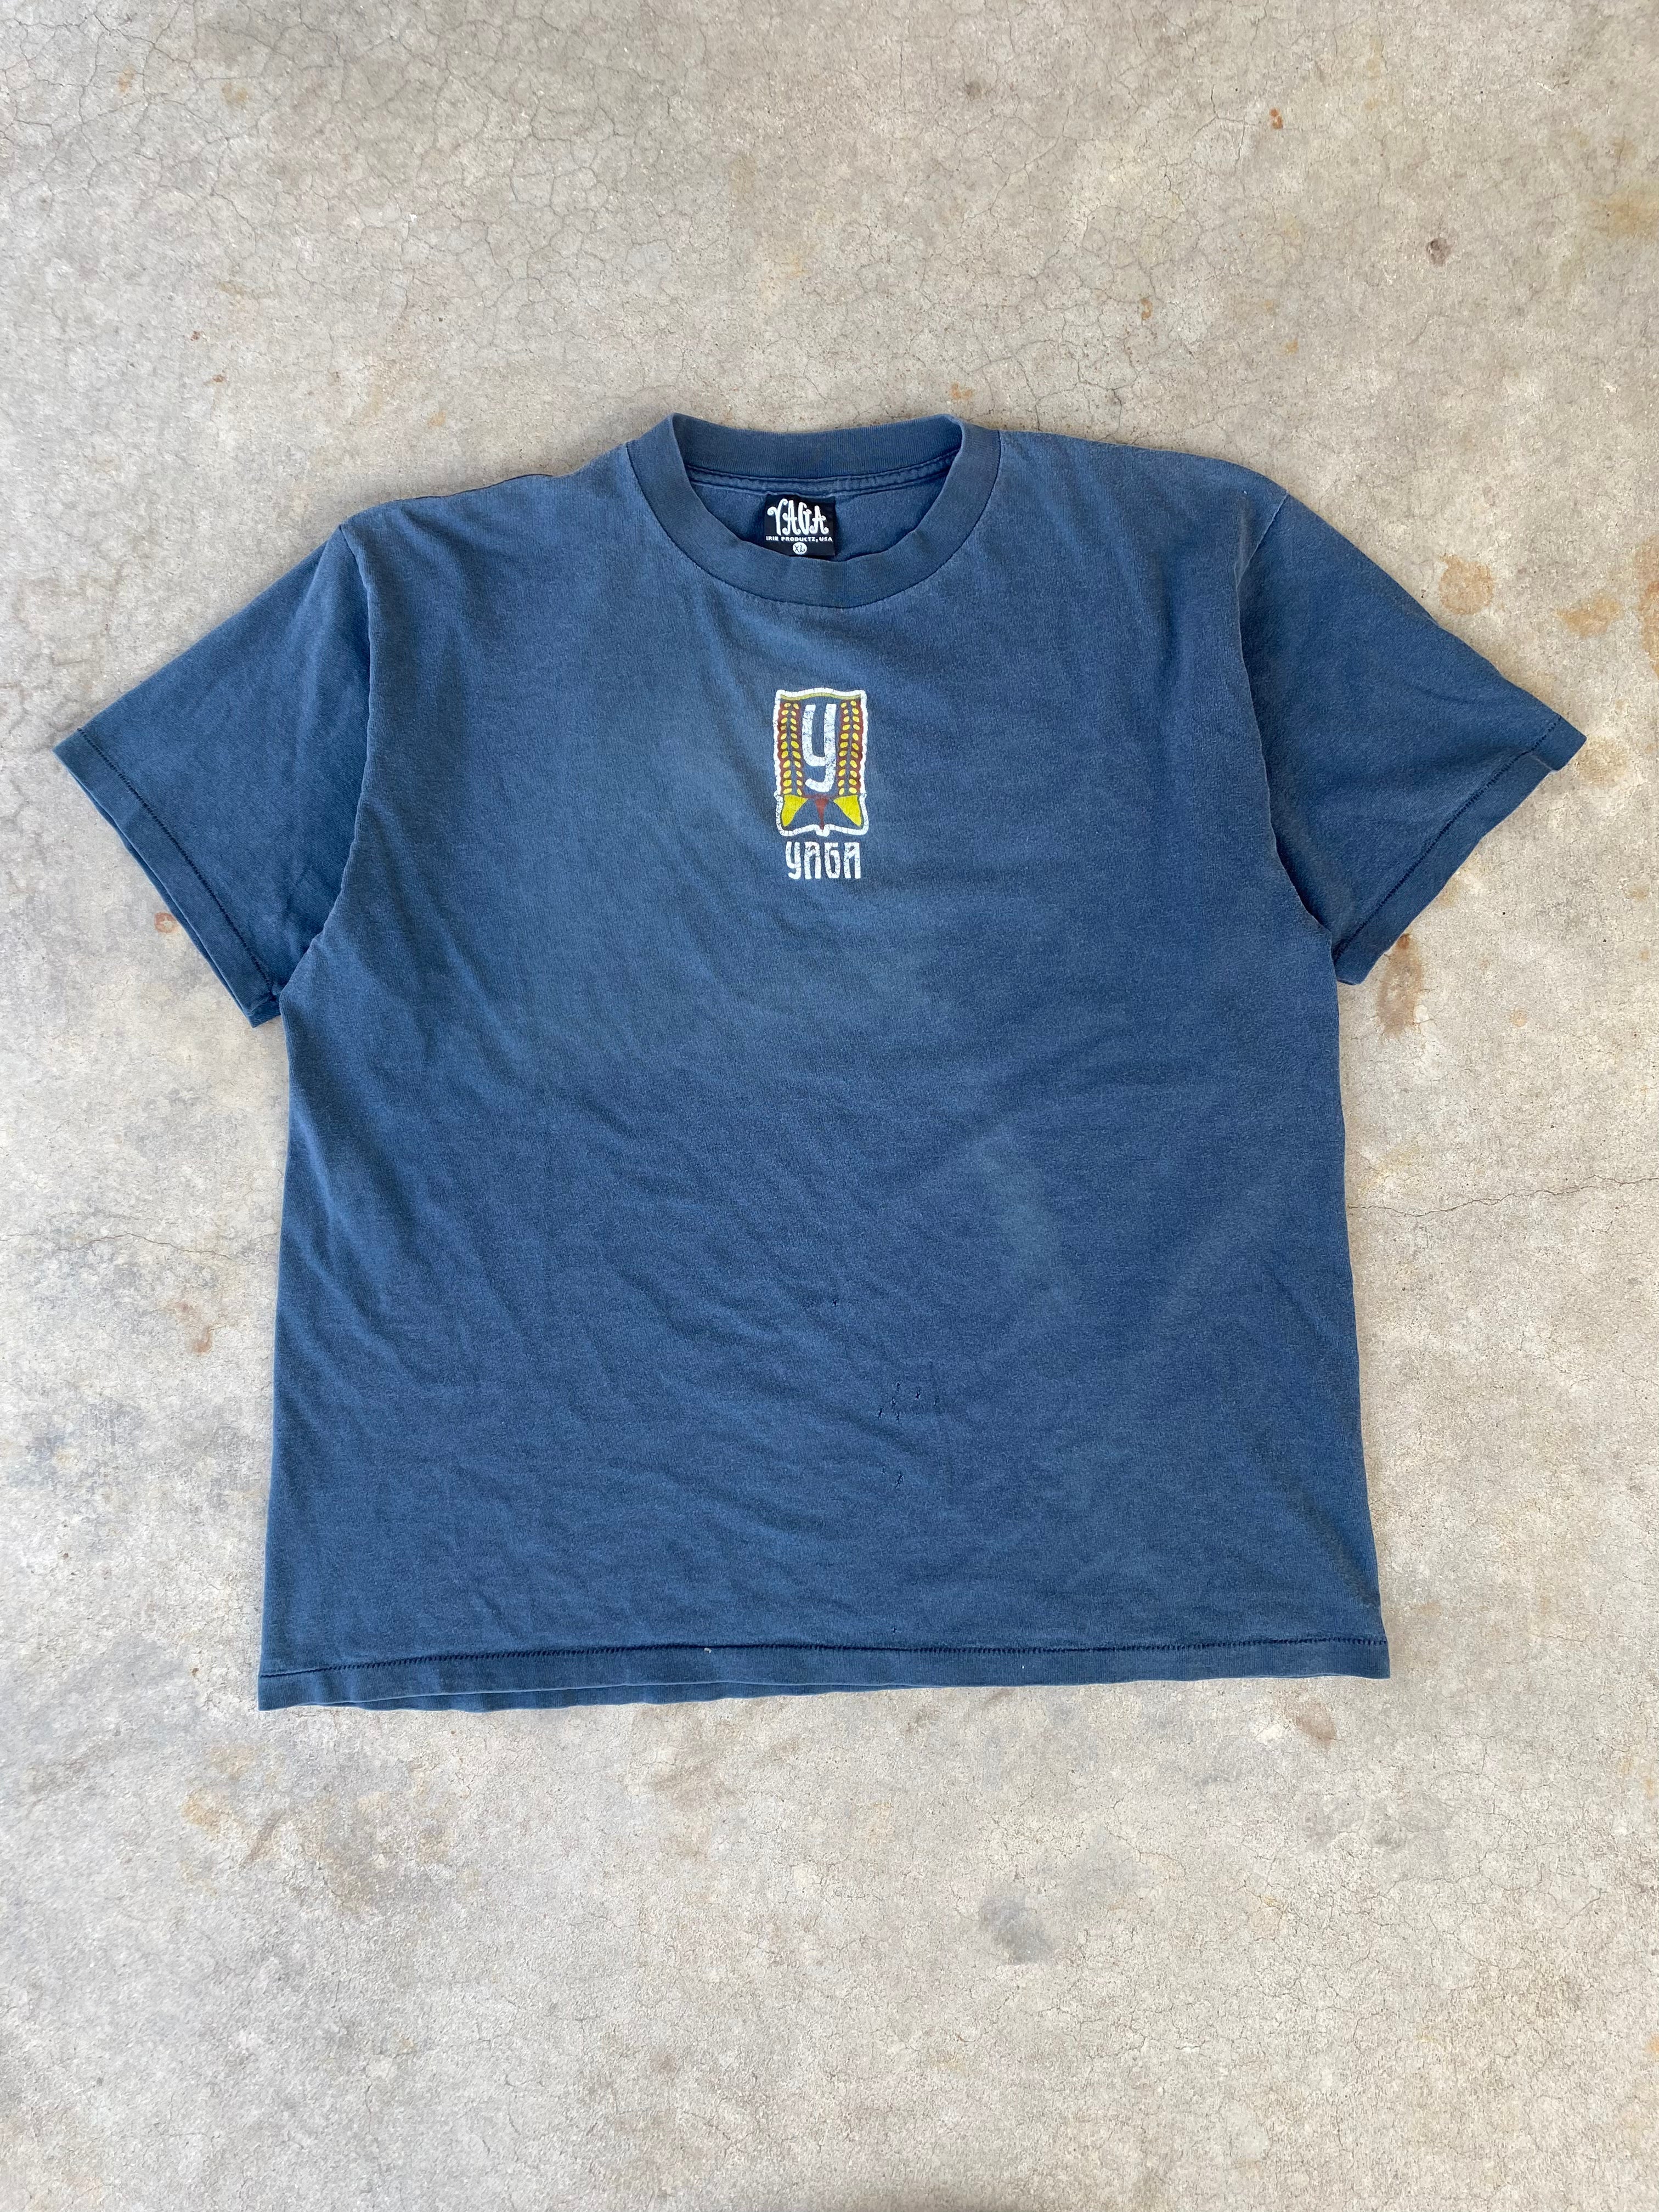 1990s Yaga Skateboarding Faded T-Shirt (XL)